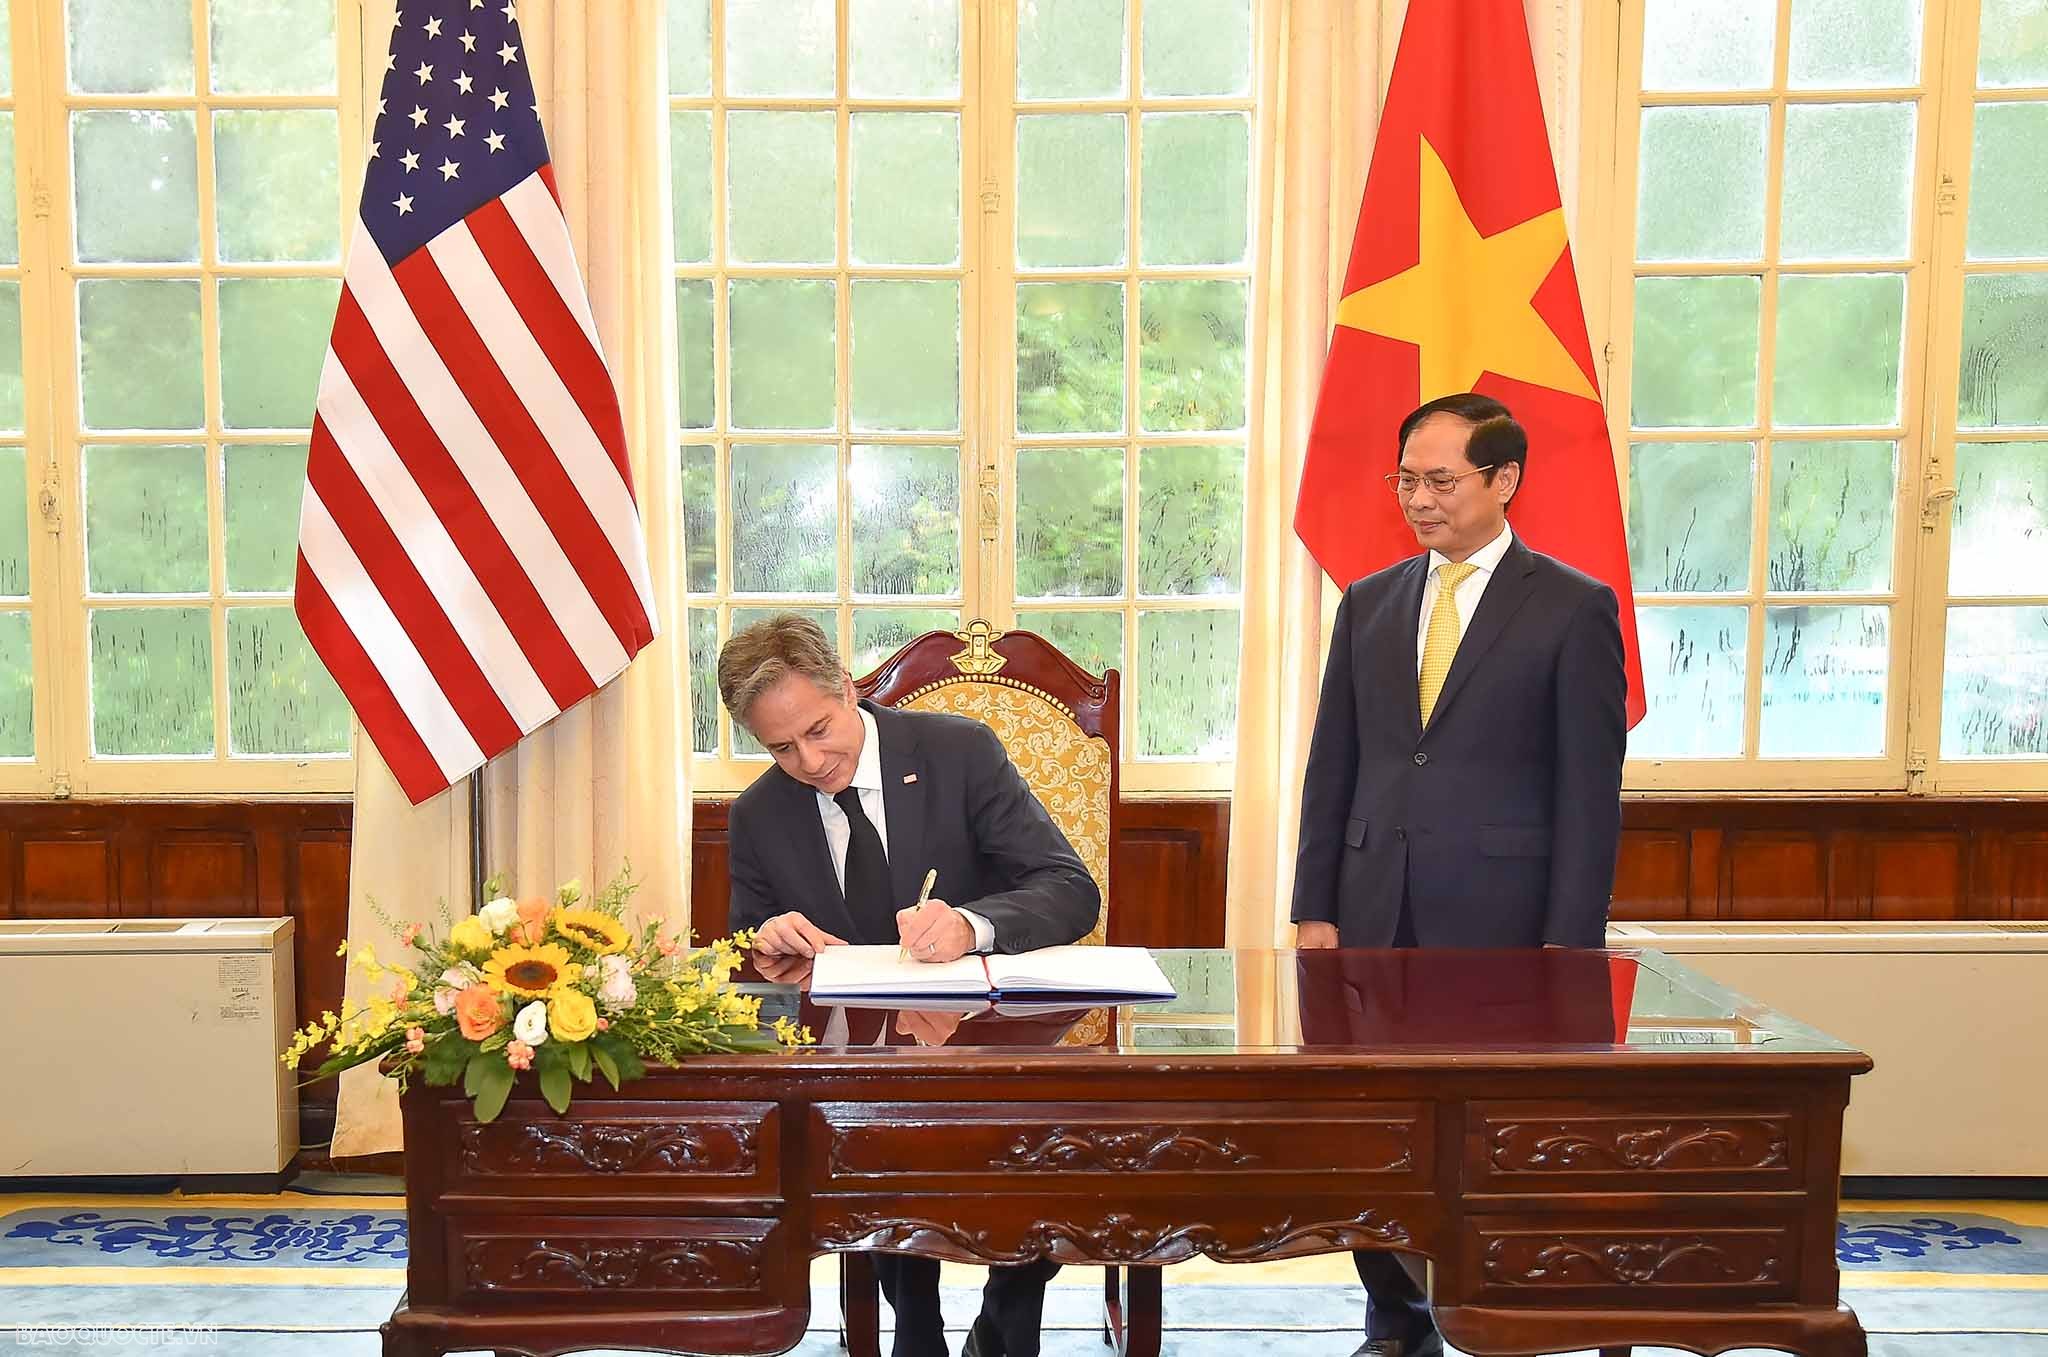 chuyến thăm của người đứng đầu Bộ Ngoại giao Hoa Kỳ thể hiện chính sách đối ngoại độc lập, tự chủ, đa phương hóa, đa dạng hóa quan hệ đối ngoại của Việt Nam.